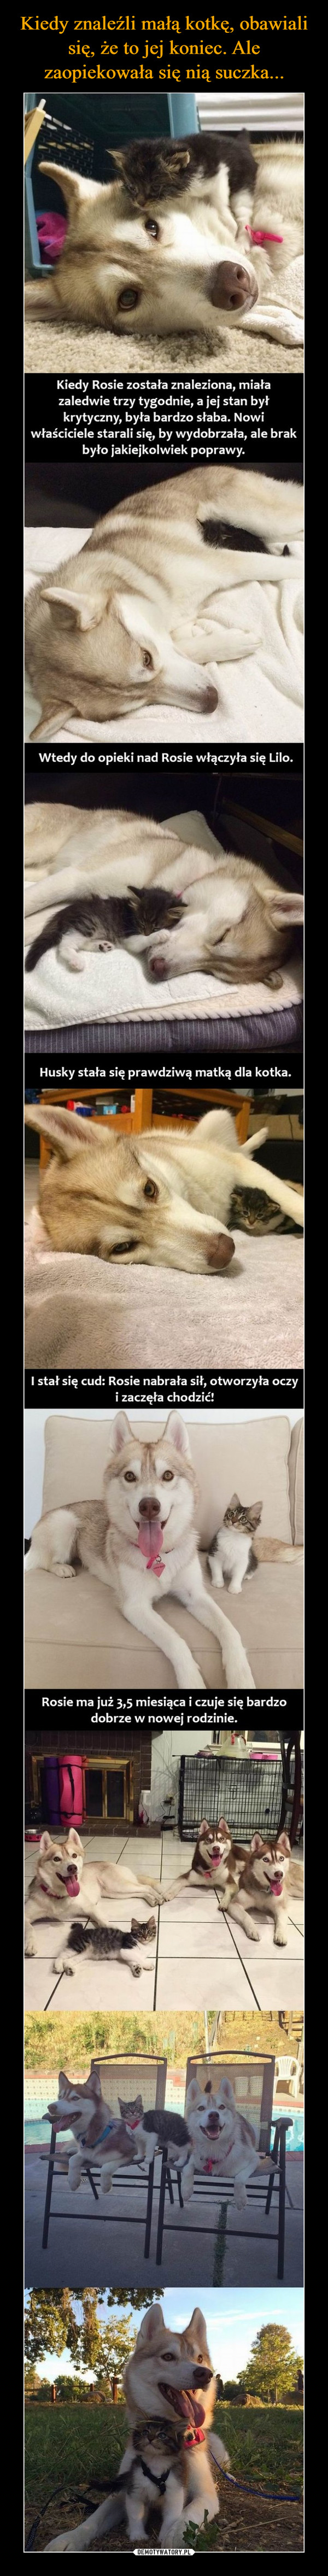  –  Kiedy Rosie została znaleziona, miałazaledwie trzy tygodnie, a jej stan byłkrytyczny, była bardzo słaba. Nowiwłaściciele starali się, by wydobrzała, ale brakbyło jakiejkolwiek poprawy.Wtedy do opieki nad Rosie włączyła się Lilo.Husky stała się prawdziwą matką dla kotka.I stał się cud: Rosie nabrała sił, otworzyła oczyi zaczęła chodzić!Rosie ma już 3,5 miesiąca i czuje się bardzodobrze w nowej rodzinie.